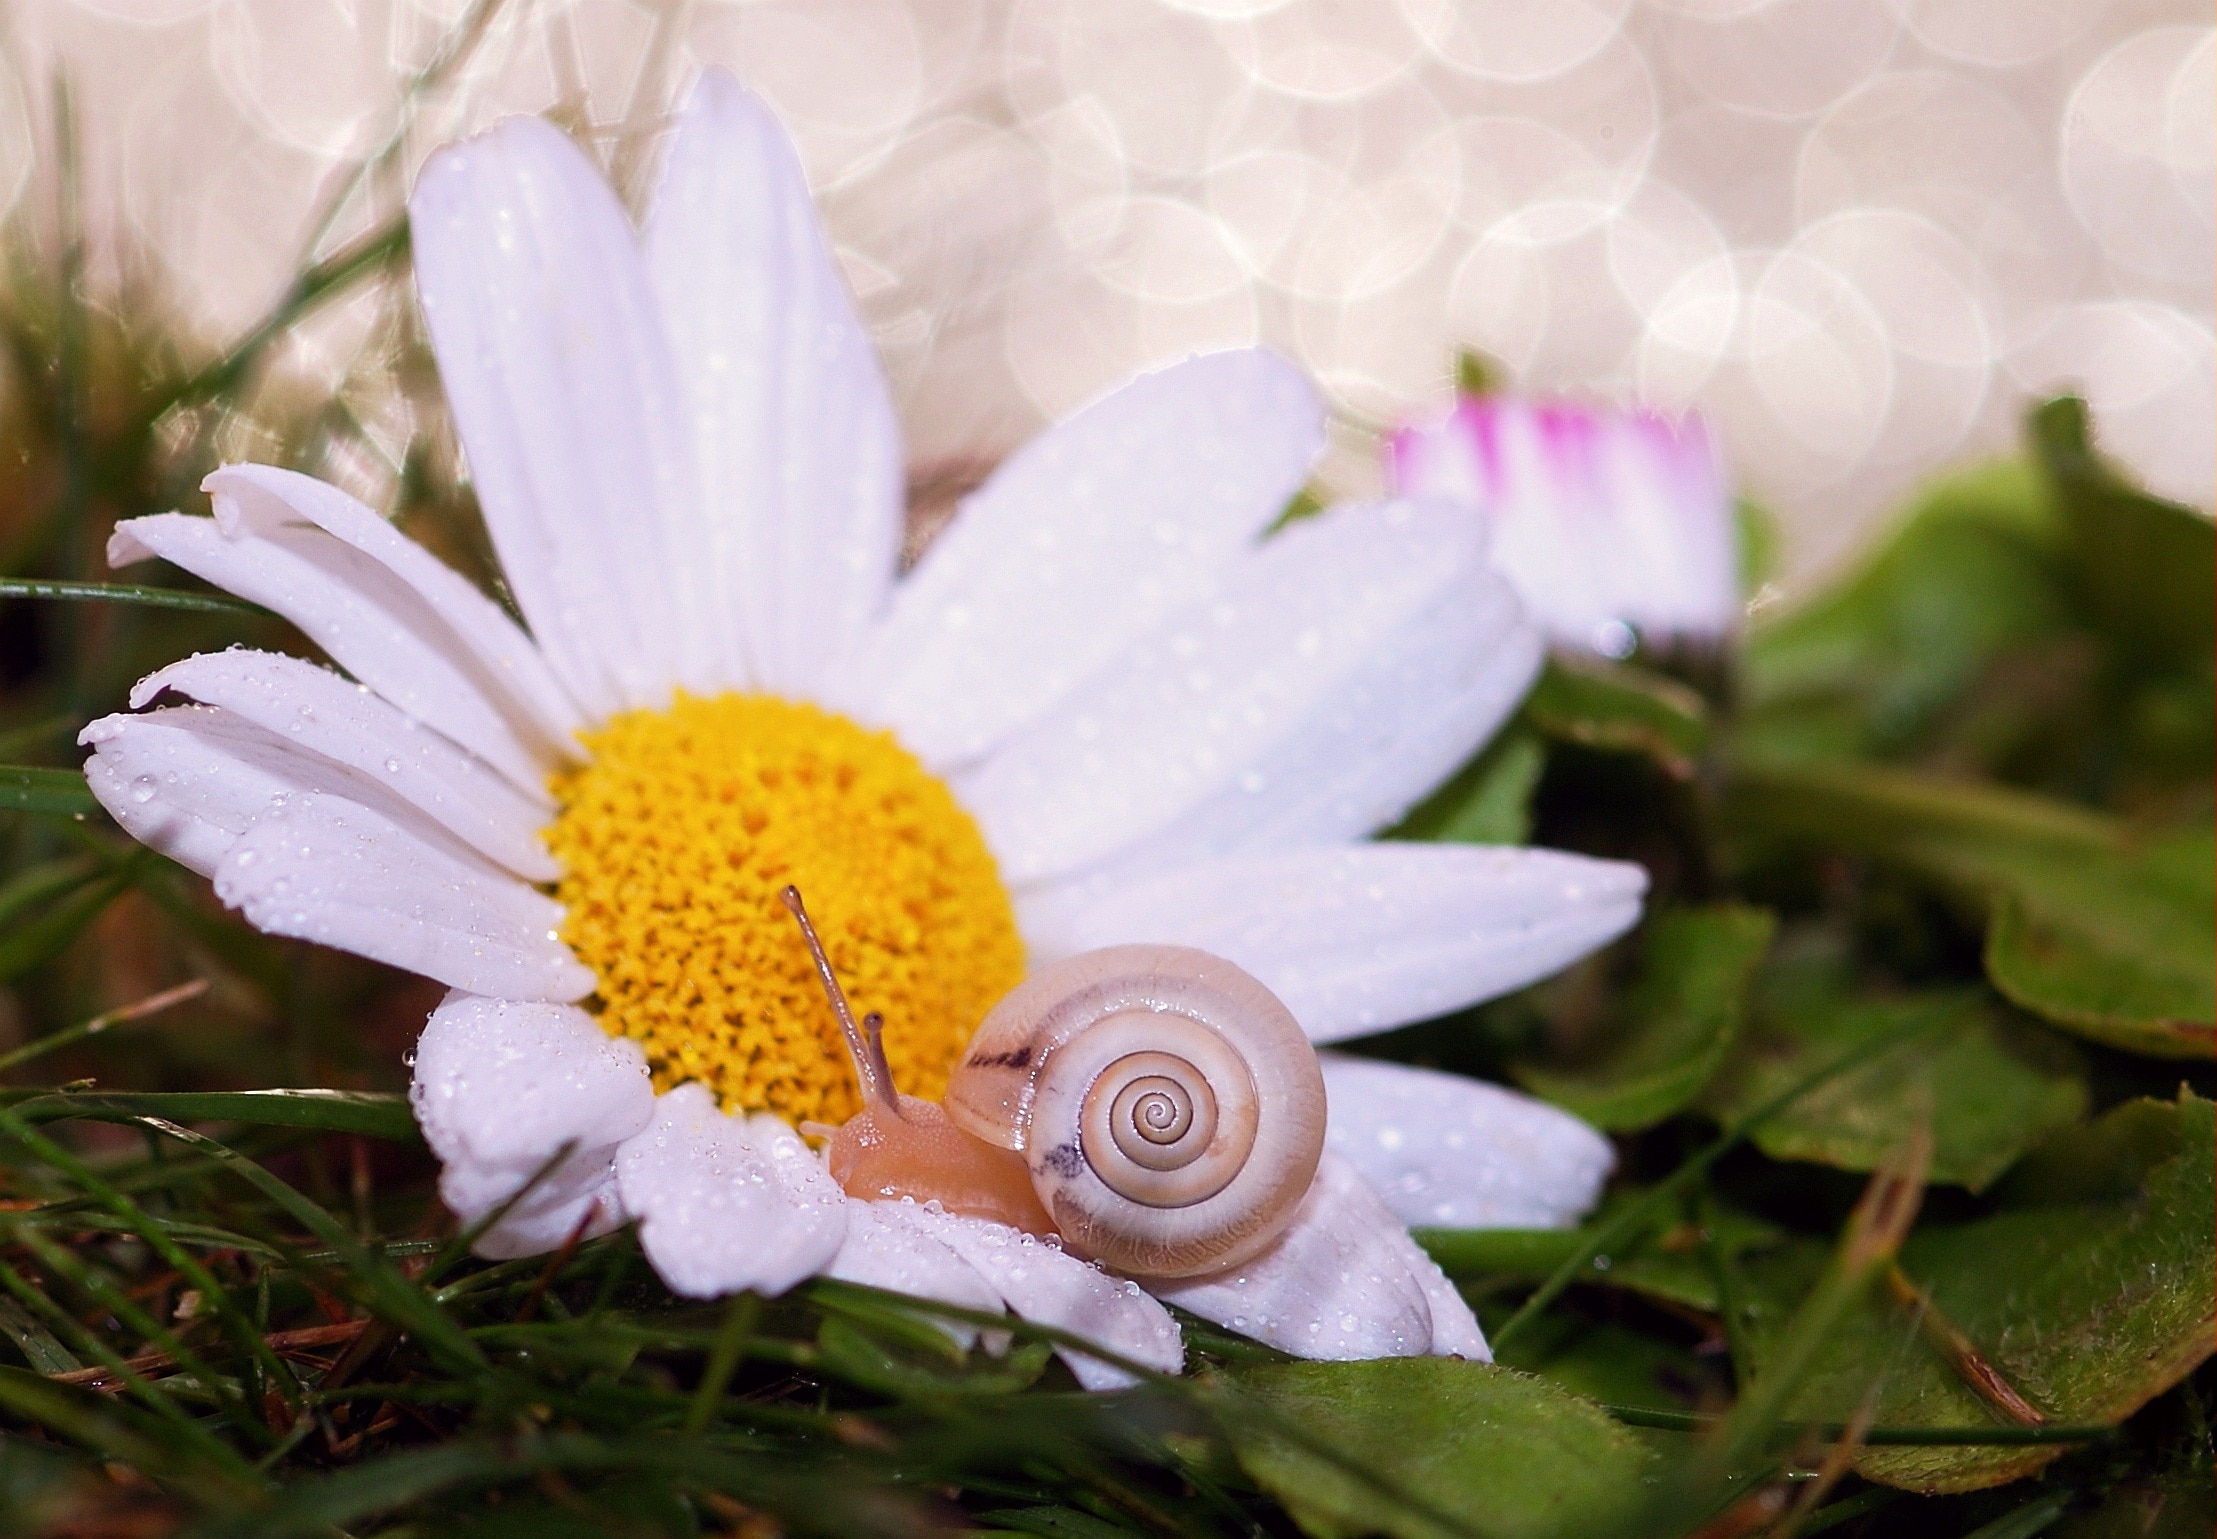 snail on white petaled flower